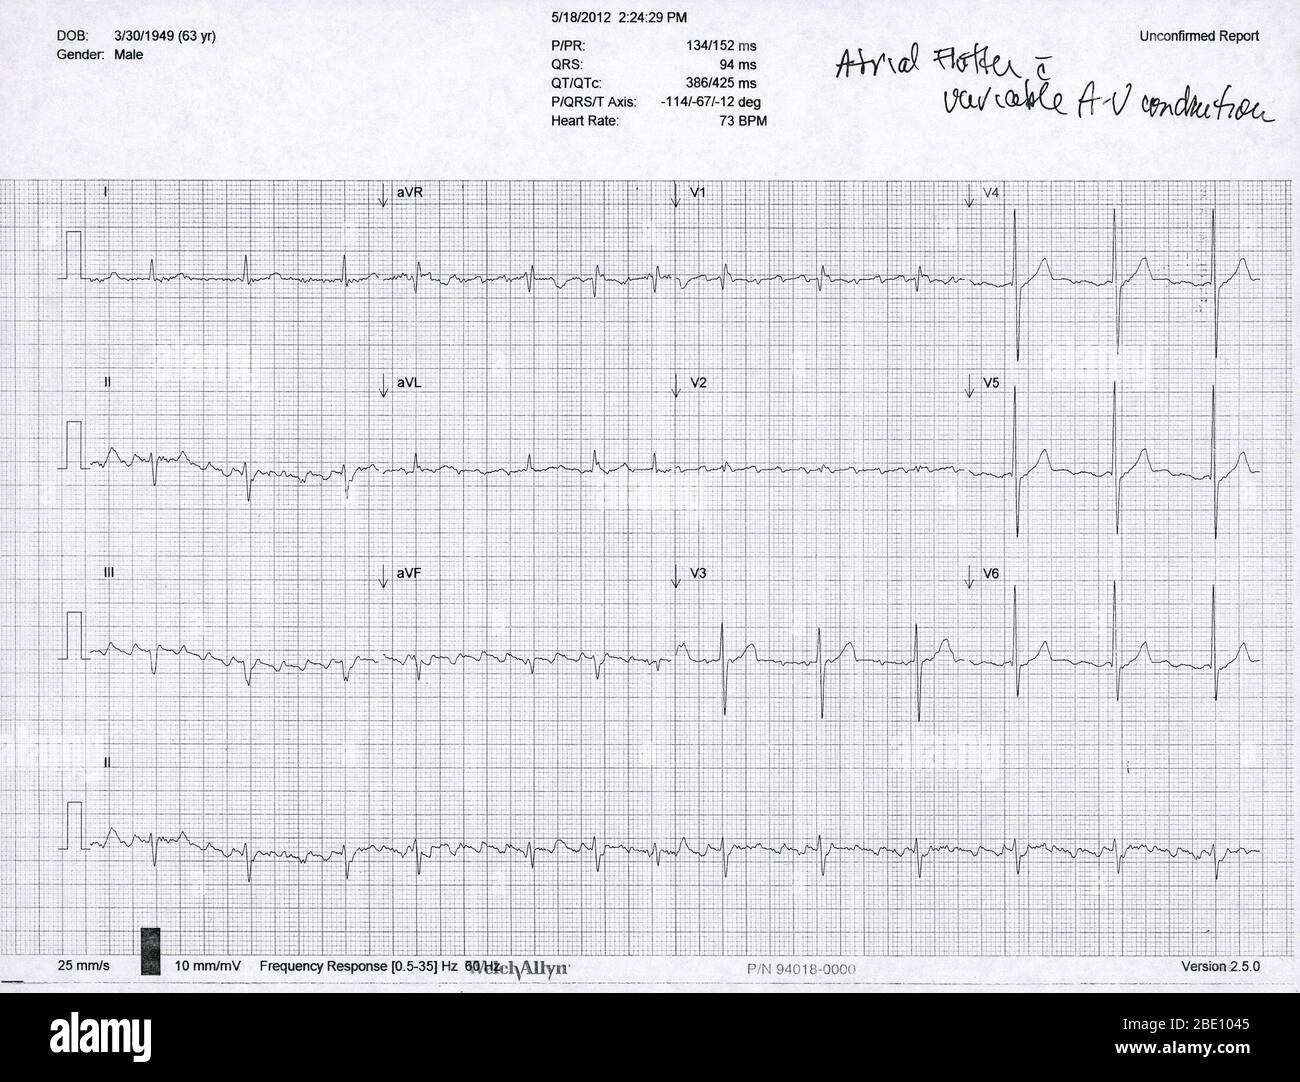 Elektrokardiogramm (EKG) eines 63-jährigen Mannes mit Vorhofflattern und AV-Leitung. Ein EKG misst das Pumpen der Herzkammern mit 12 externen Elektroden (I-III, V1-V6 und AVR, aVL und aVF) und zeichnet es als elektrische Wellen auf. Ein Flattern ist eine erhöhte Kontraktionsrate der oberen Herzkammern (Atrien), die als zahlreiche flache Wellen gesehen wird Stockfoto